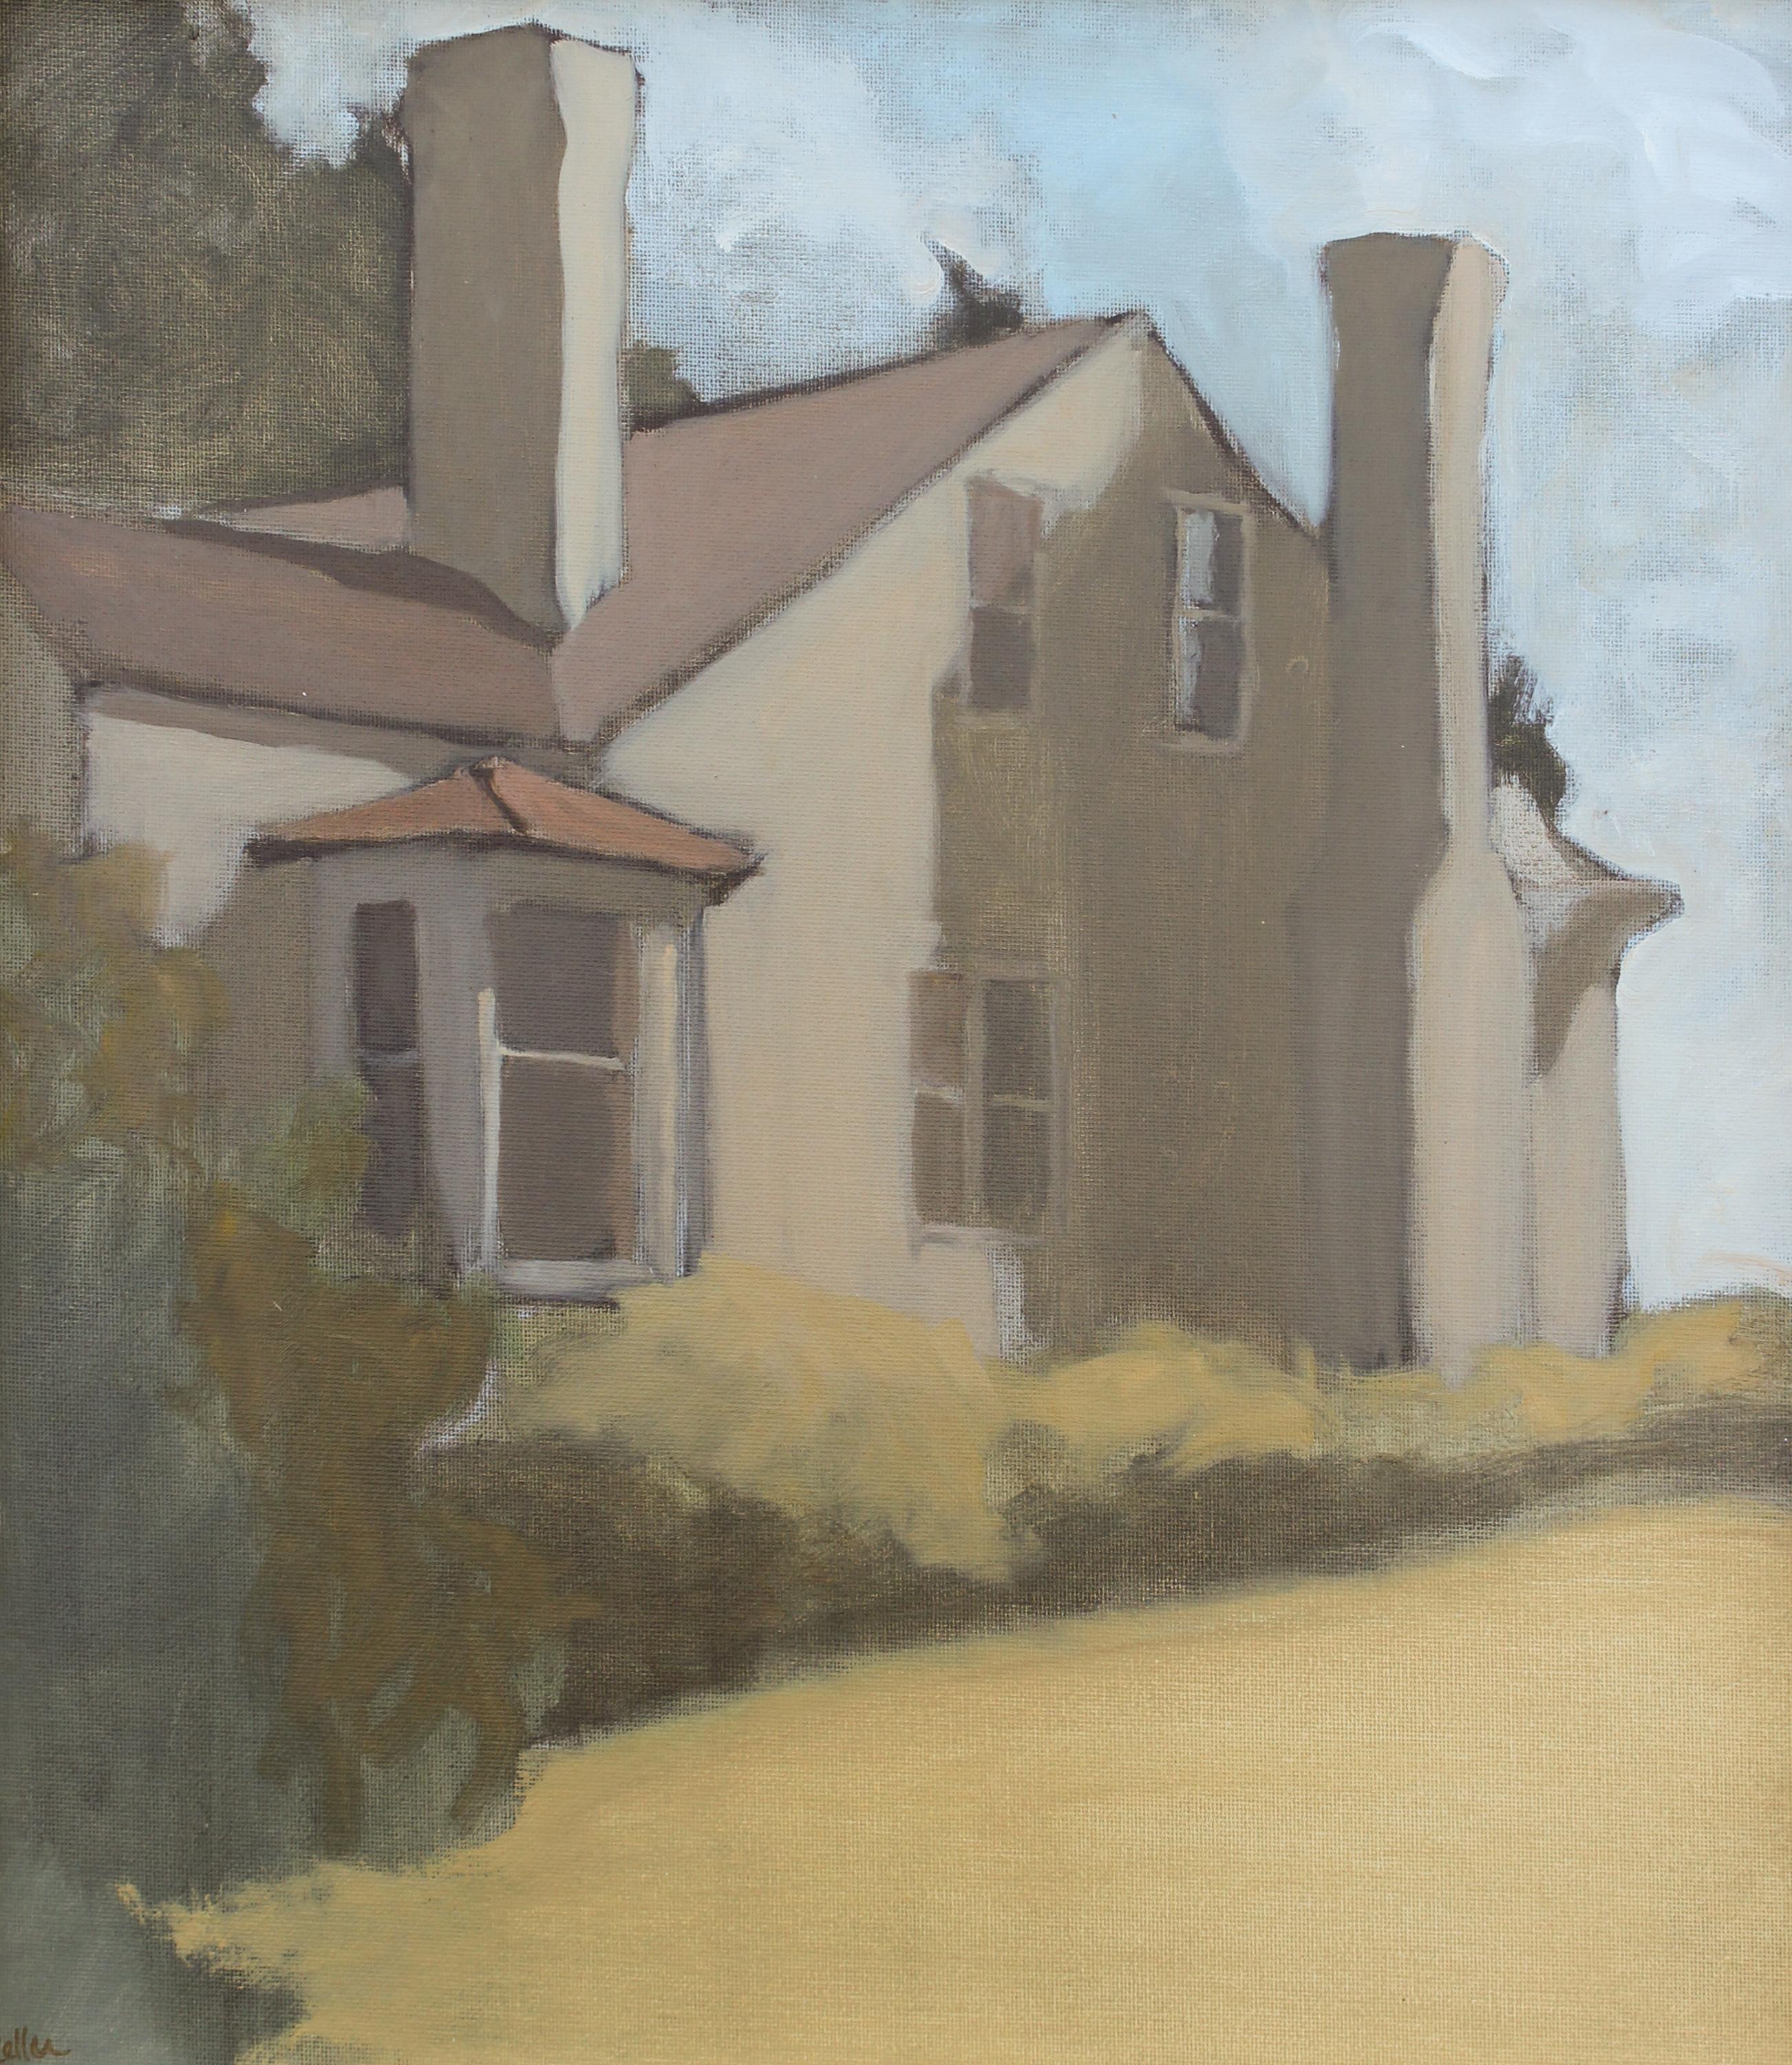 'Bleak House 7-16-2020' - plein air landscape - architectural painting 